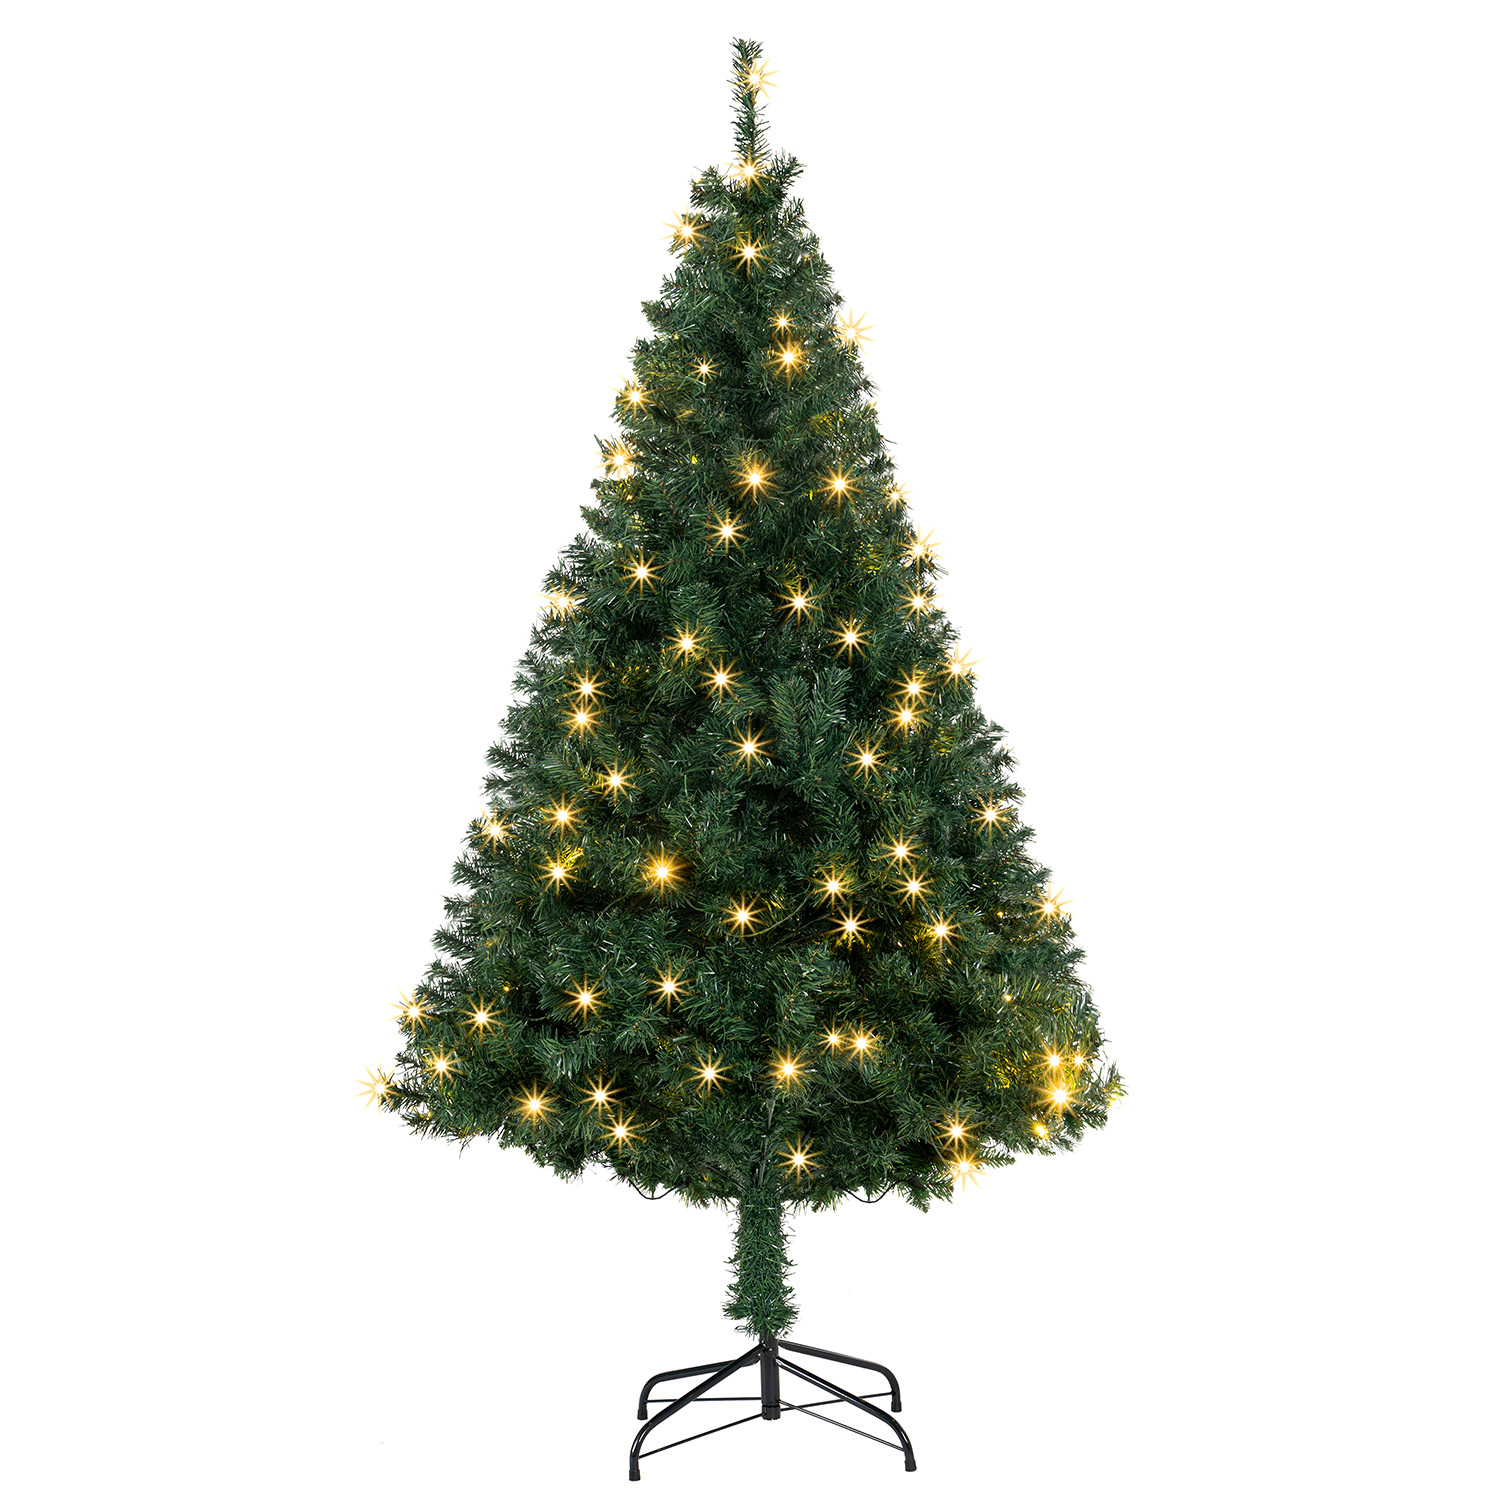 Juskys Umělý vánoční stromek s LED svíčkami - 180 cm